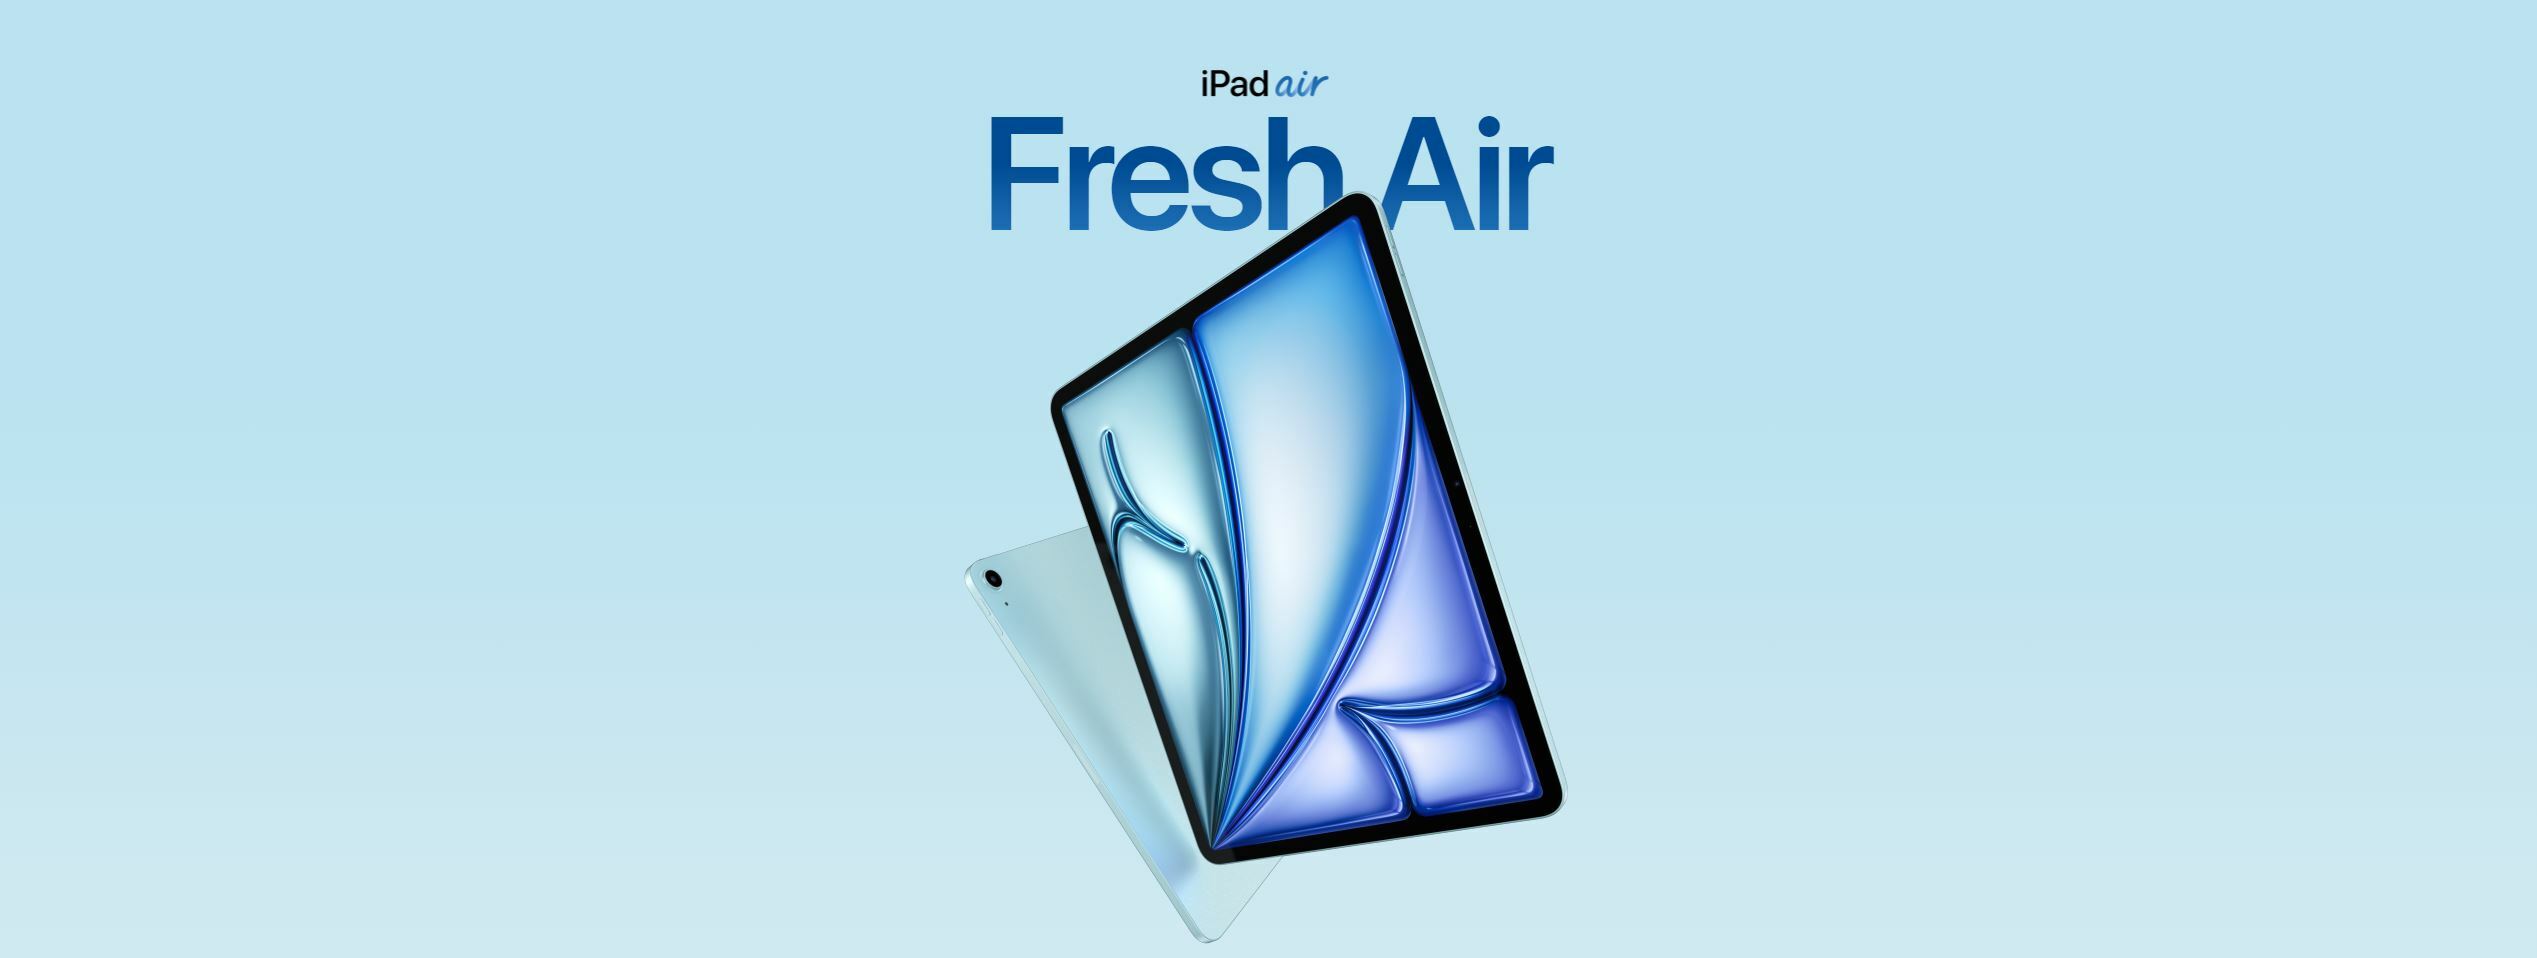 iPad Air: Fresh Air